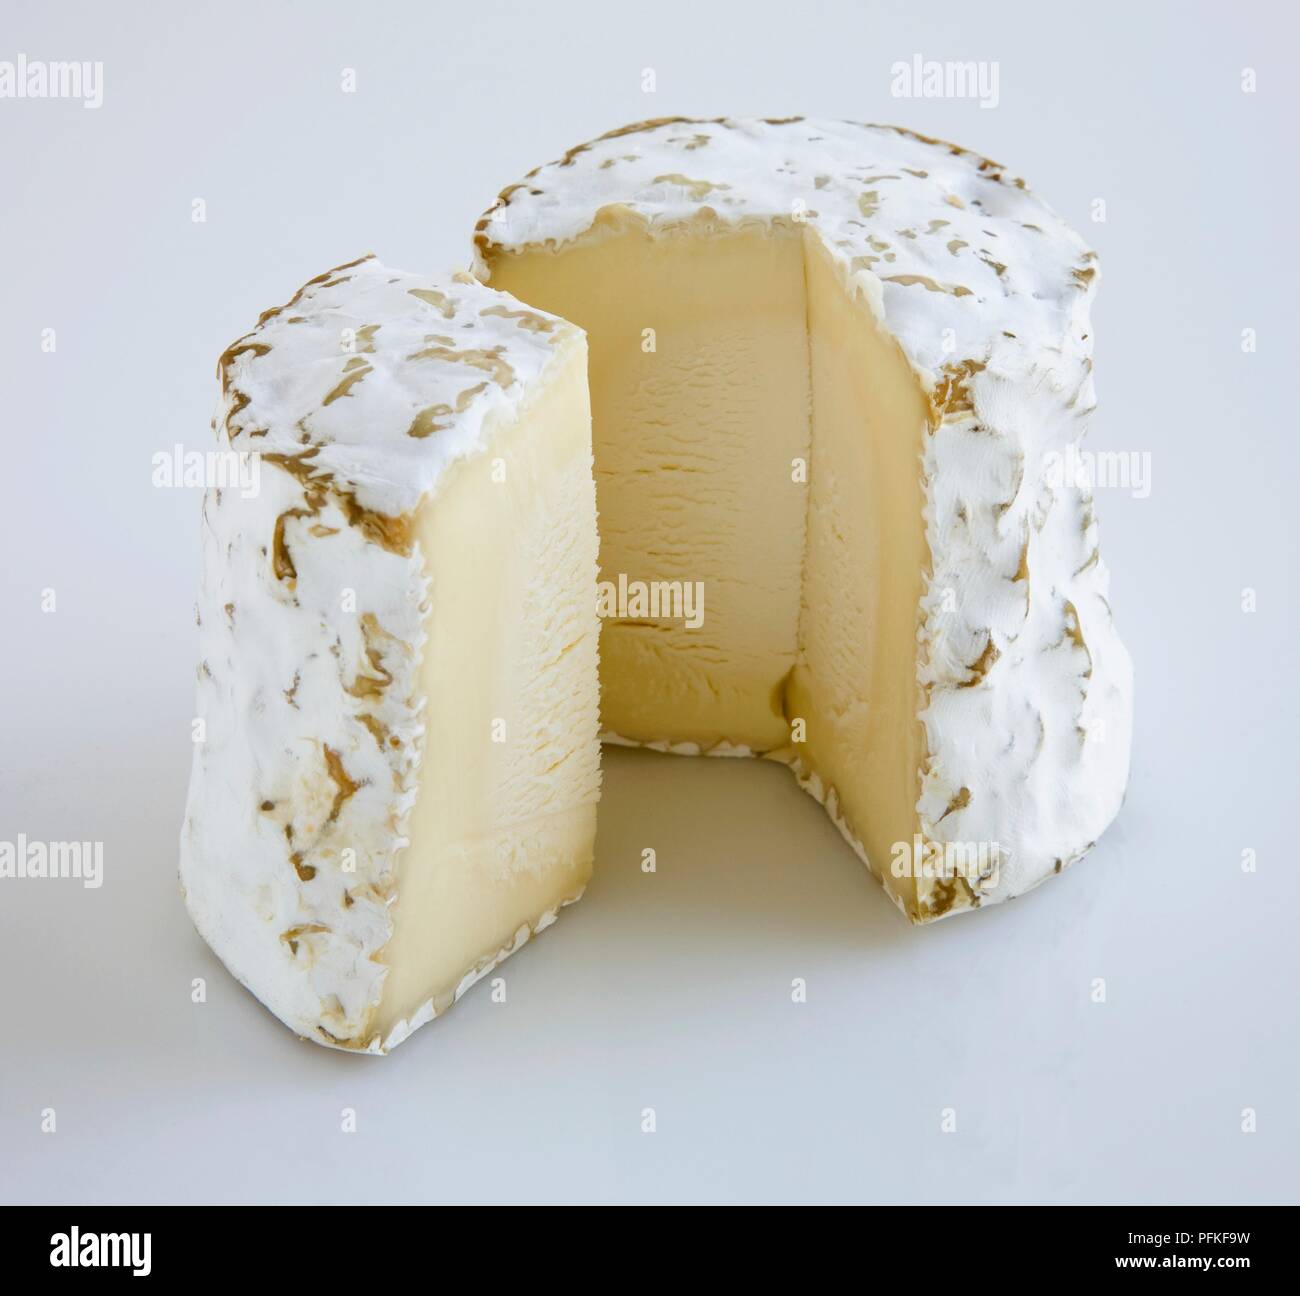 Costante americano Bliss formaggio di latte vaccino Foto Stock